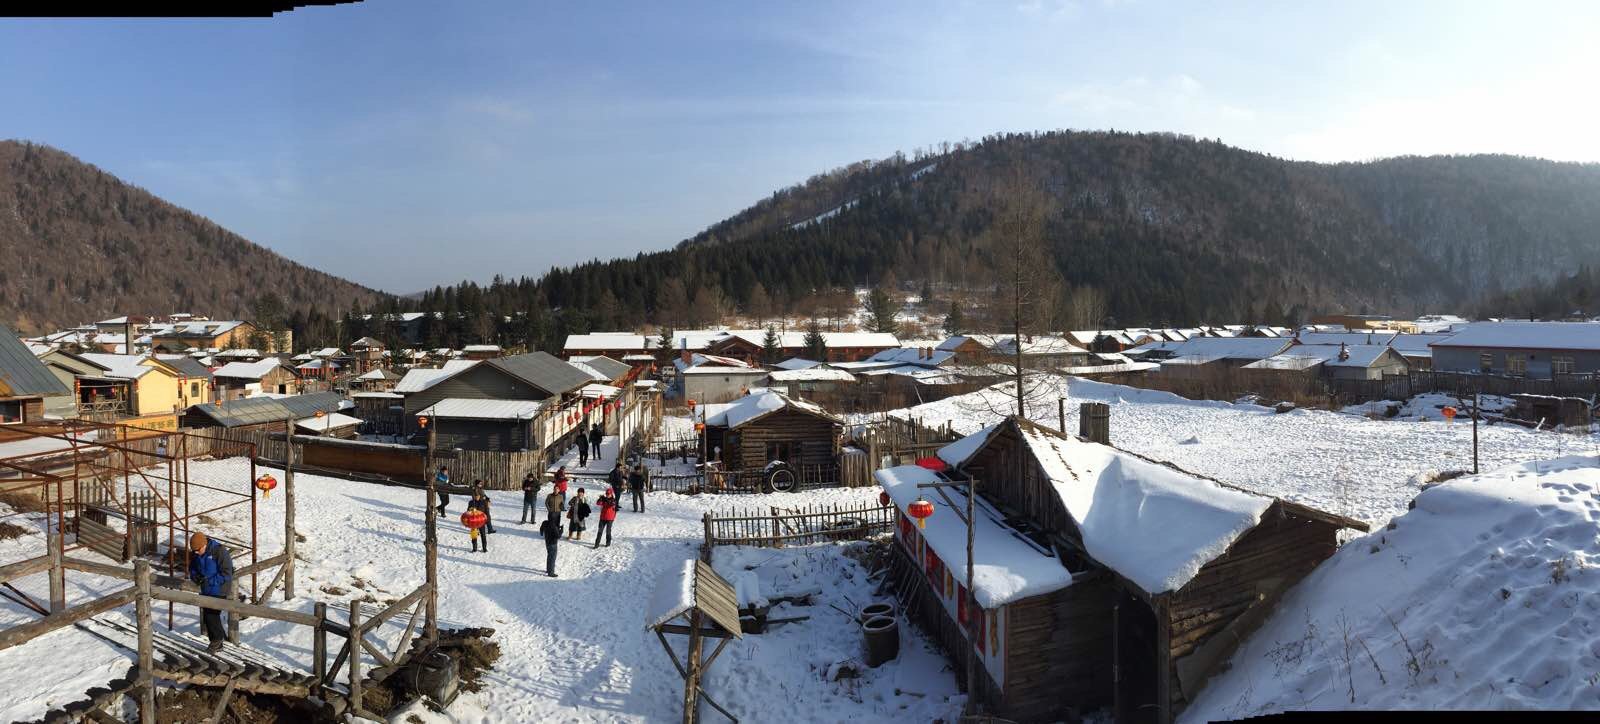 从山坡山俯瞰村庄,总结东北乡村的几个要素:蓝天,白雪,红灯笼,炊烟